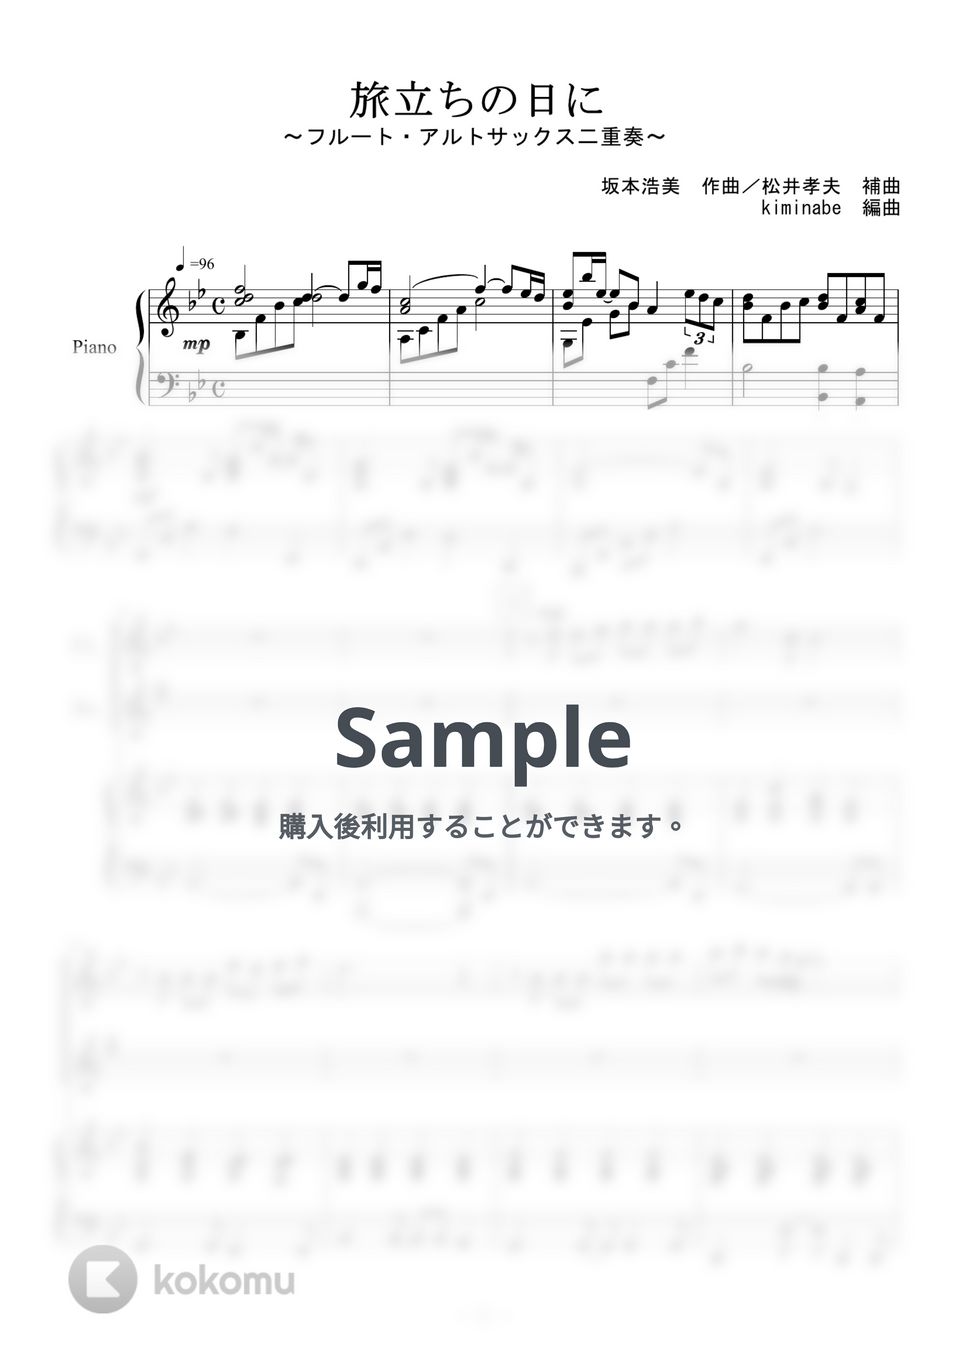 坂本浩美 - 旅立ちの日に (フルート・アルトサックス二重奏) by kiminabe